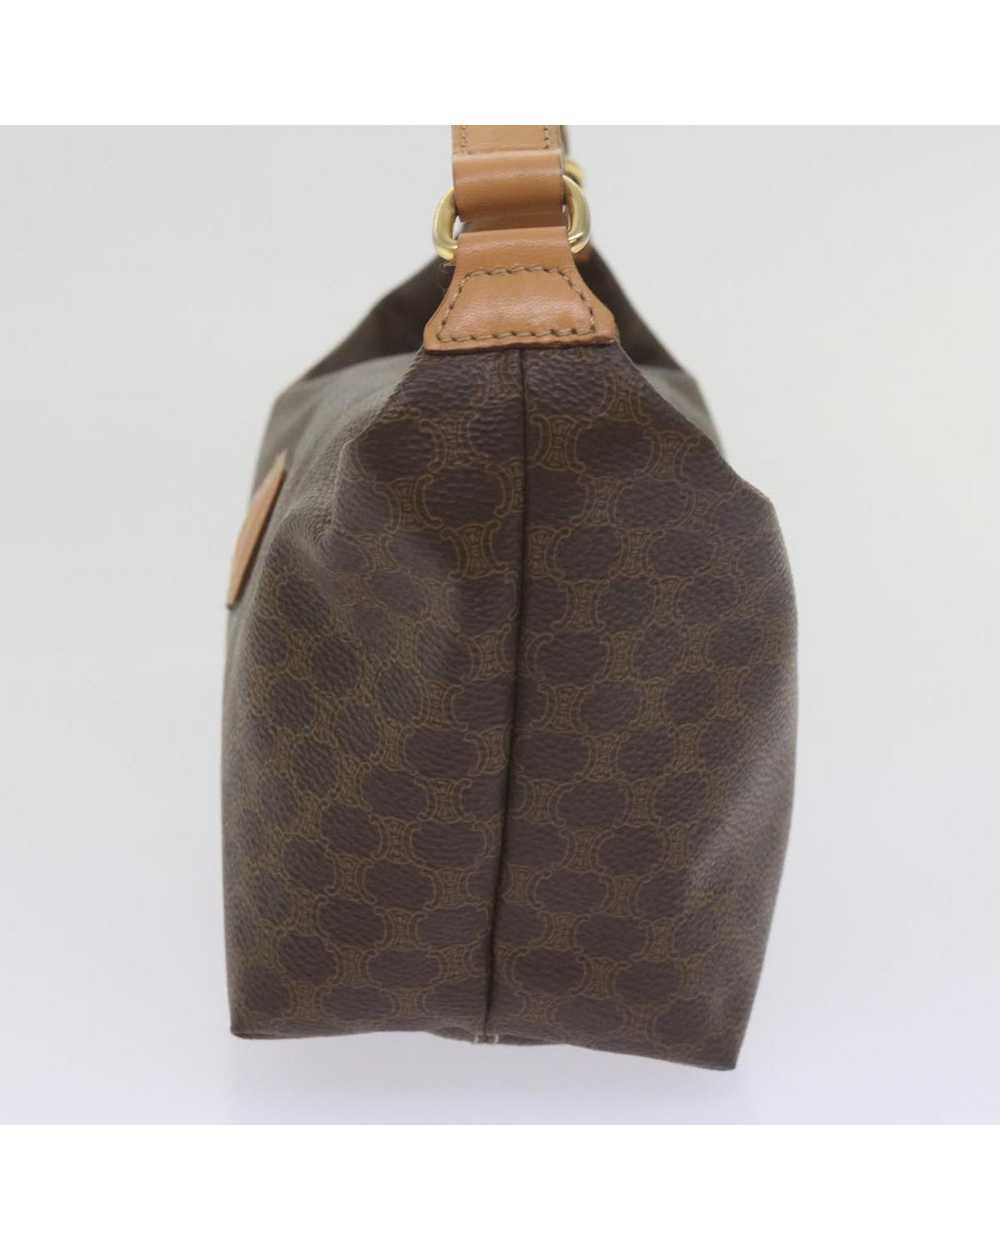 Celine Elegant Brown Canvas Bag by Luxury Designer - image 4